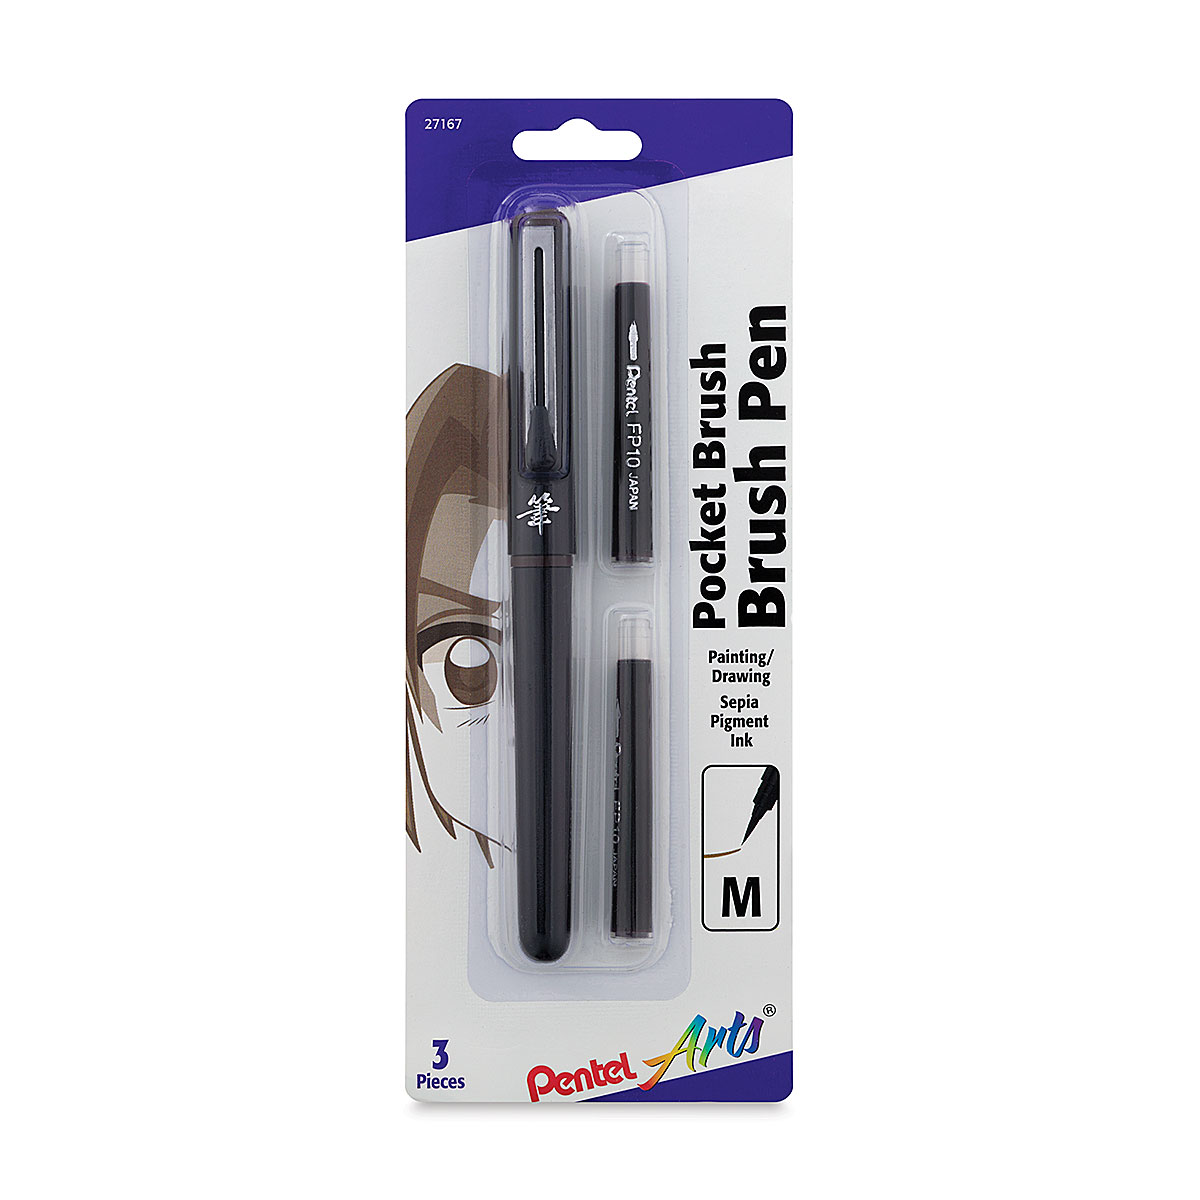 Pentel Arts Portable Pocket Brush Pen (Medium Point), 1Pen & 2Refills